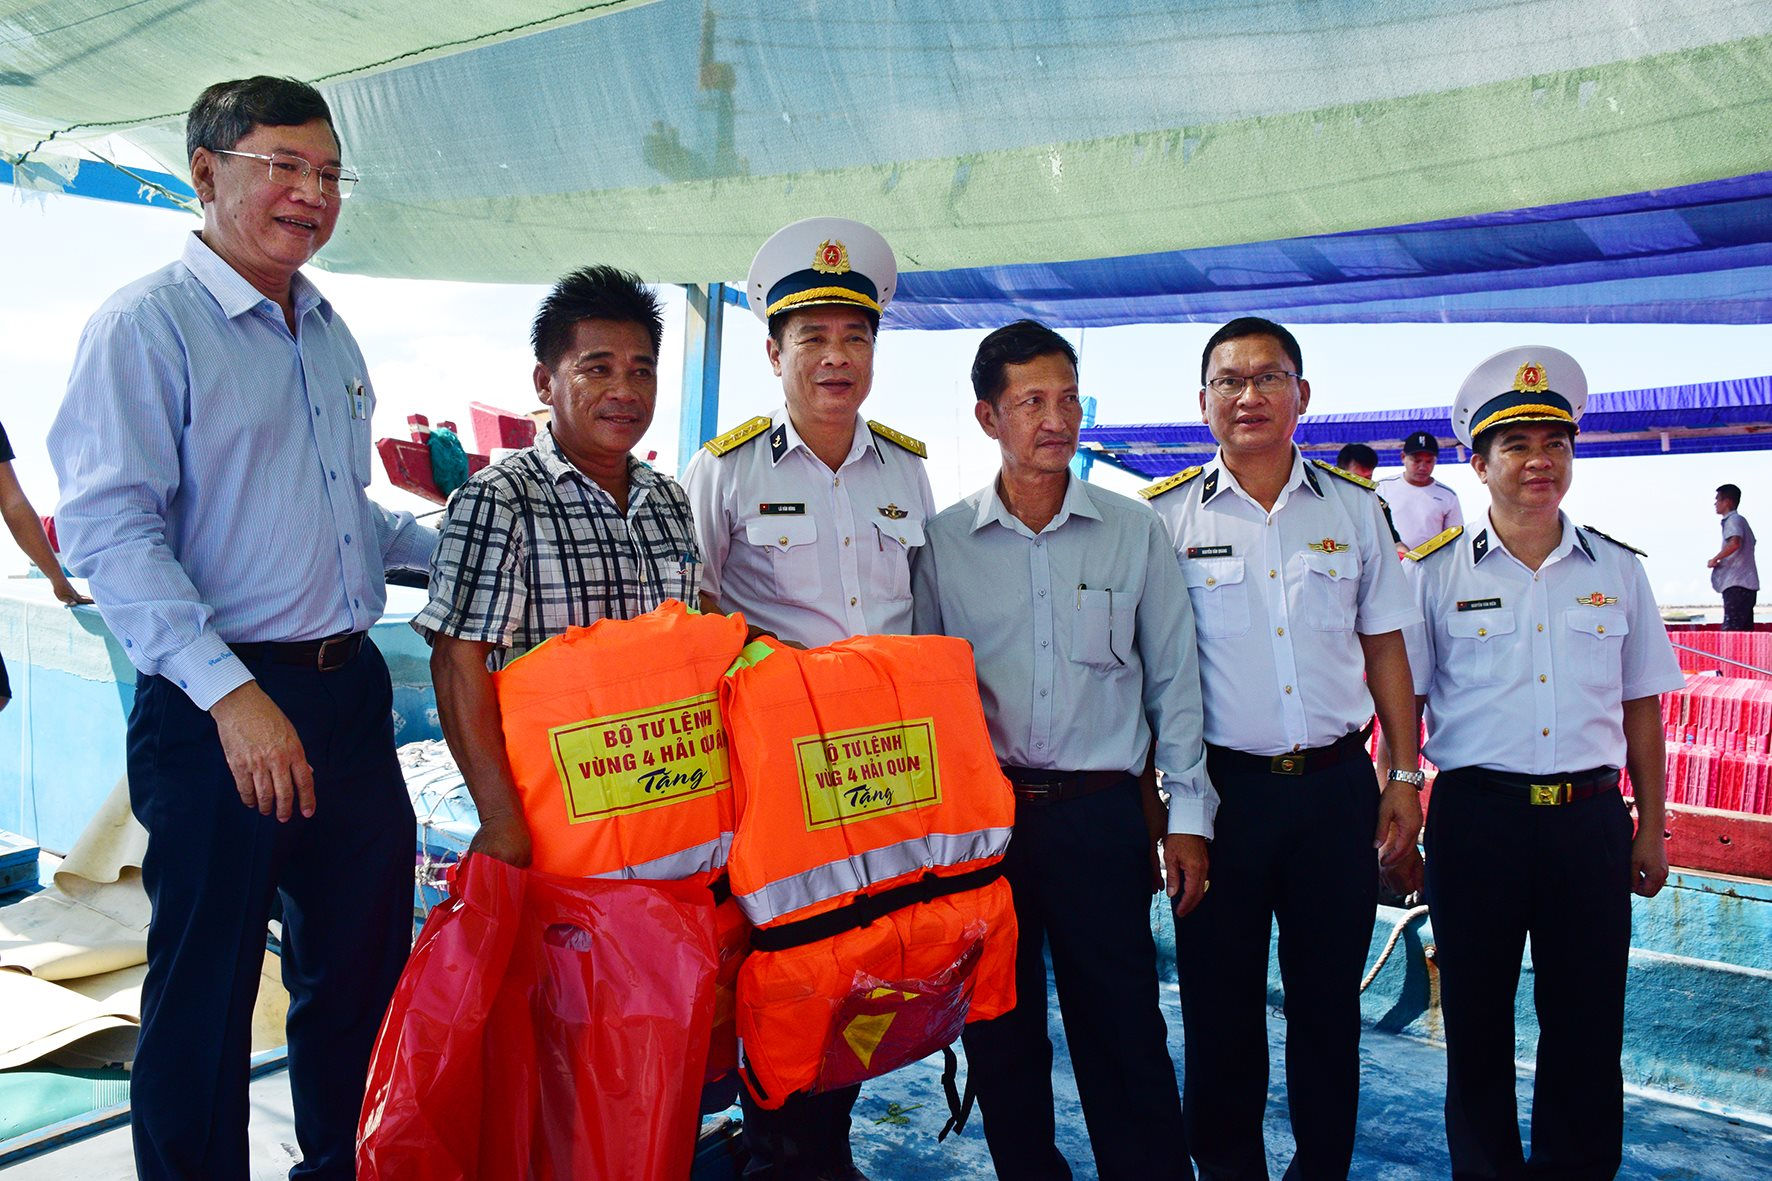 Bình Thuận: Bộ Tư lệnh Vùng 4 Hải quân trao tặng 100 phần quà cho các hộ ngư dân có hoàn cảnh khó khăn - Ảnh 1.